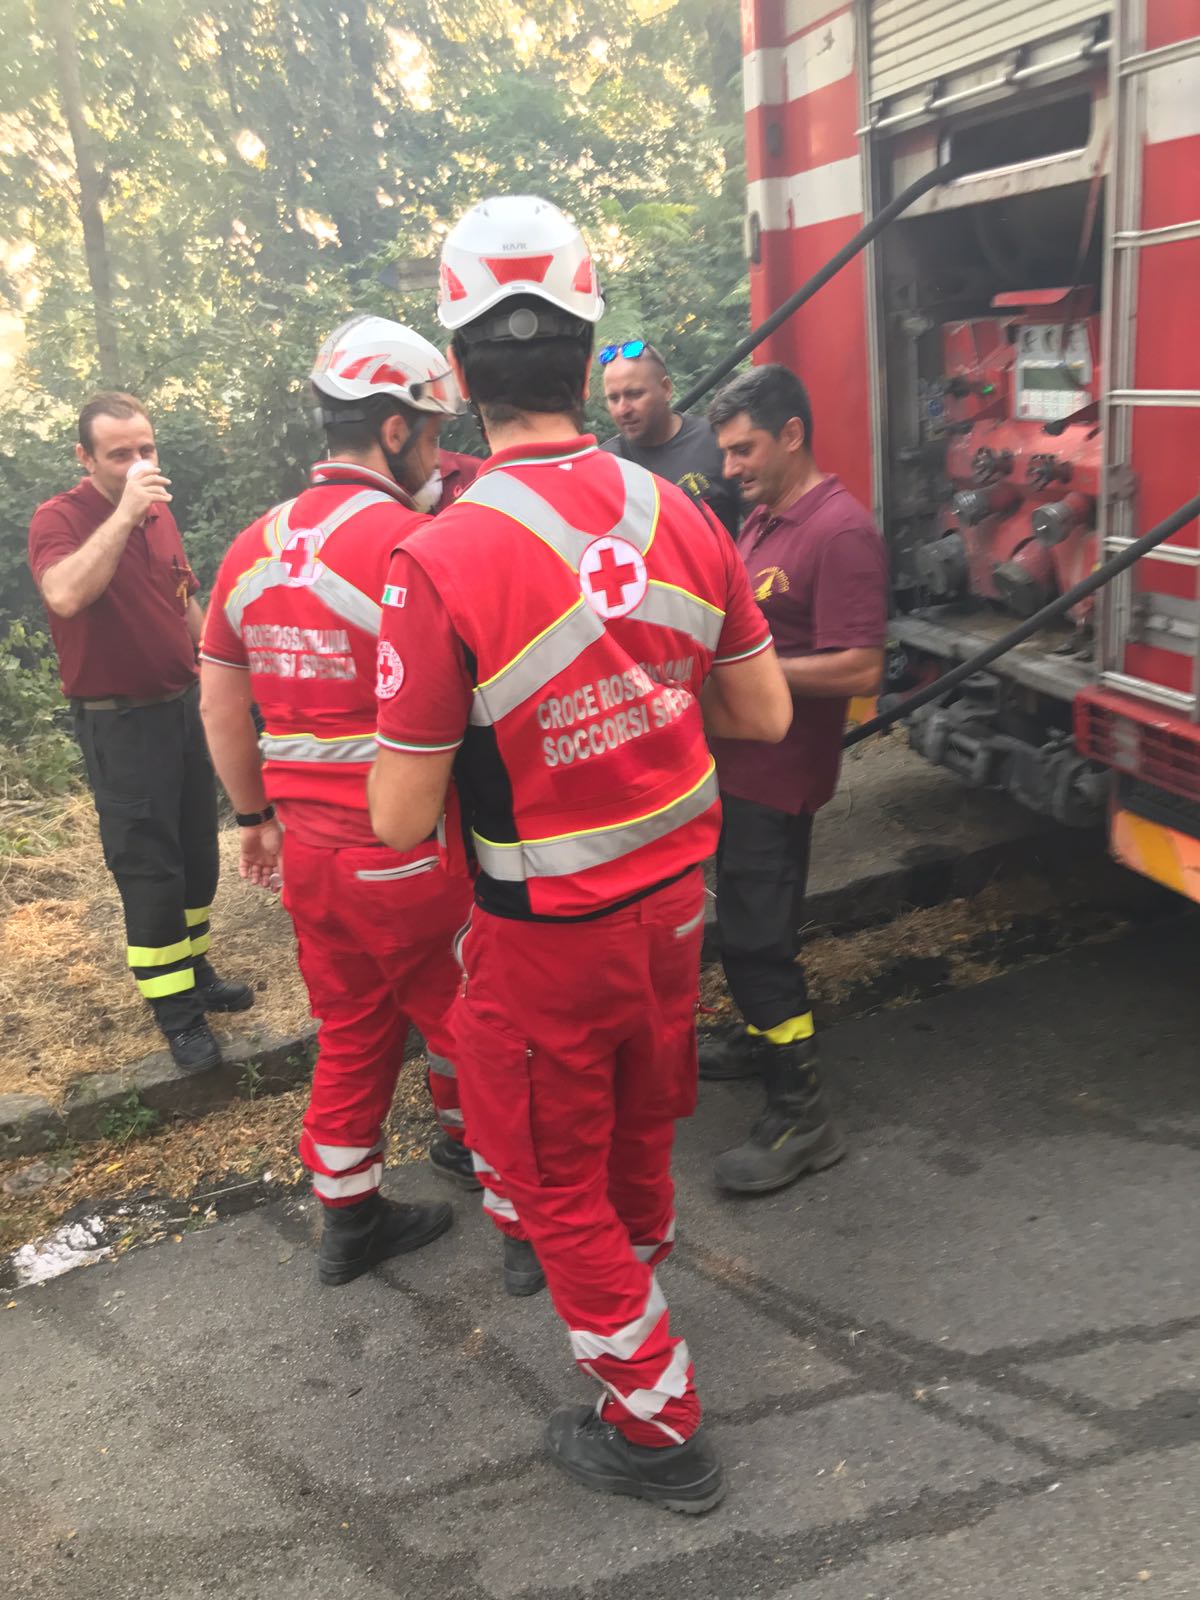 A Ercolano e Torre del Greco i volontari della Croce Rossa Italiana sono impegnati nella distribuzione di acqua, sali minerali, biscotti e latte a tutti gli operatori impegnati nel servizio antincendio.